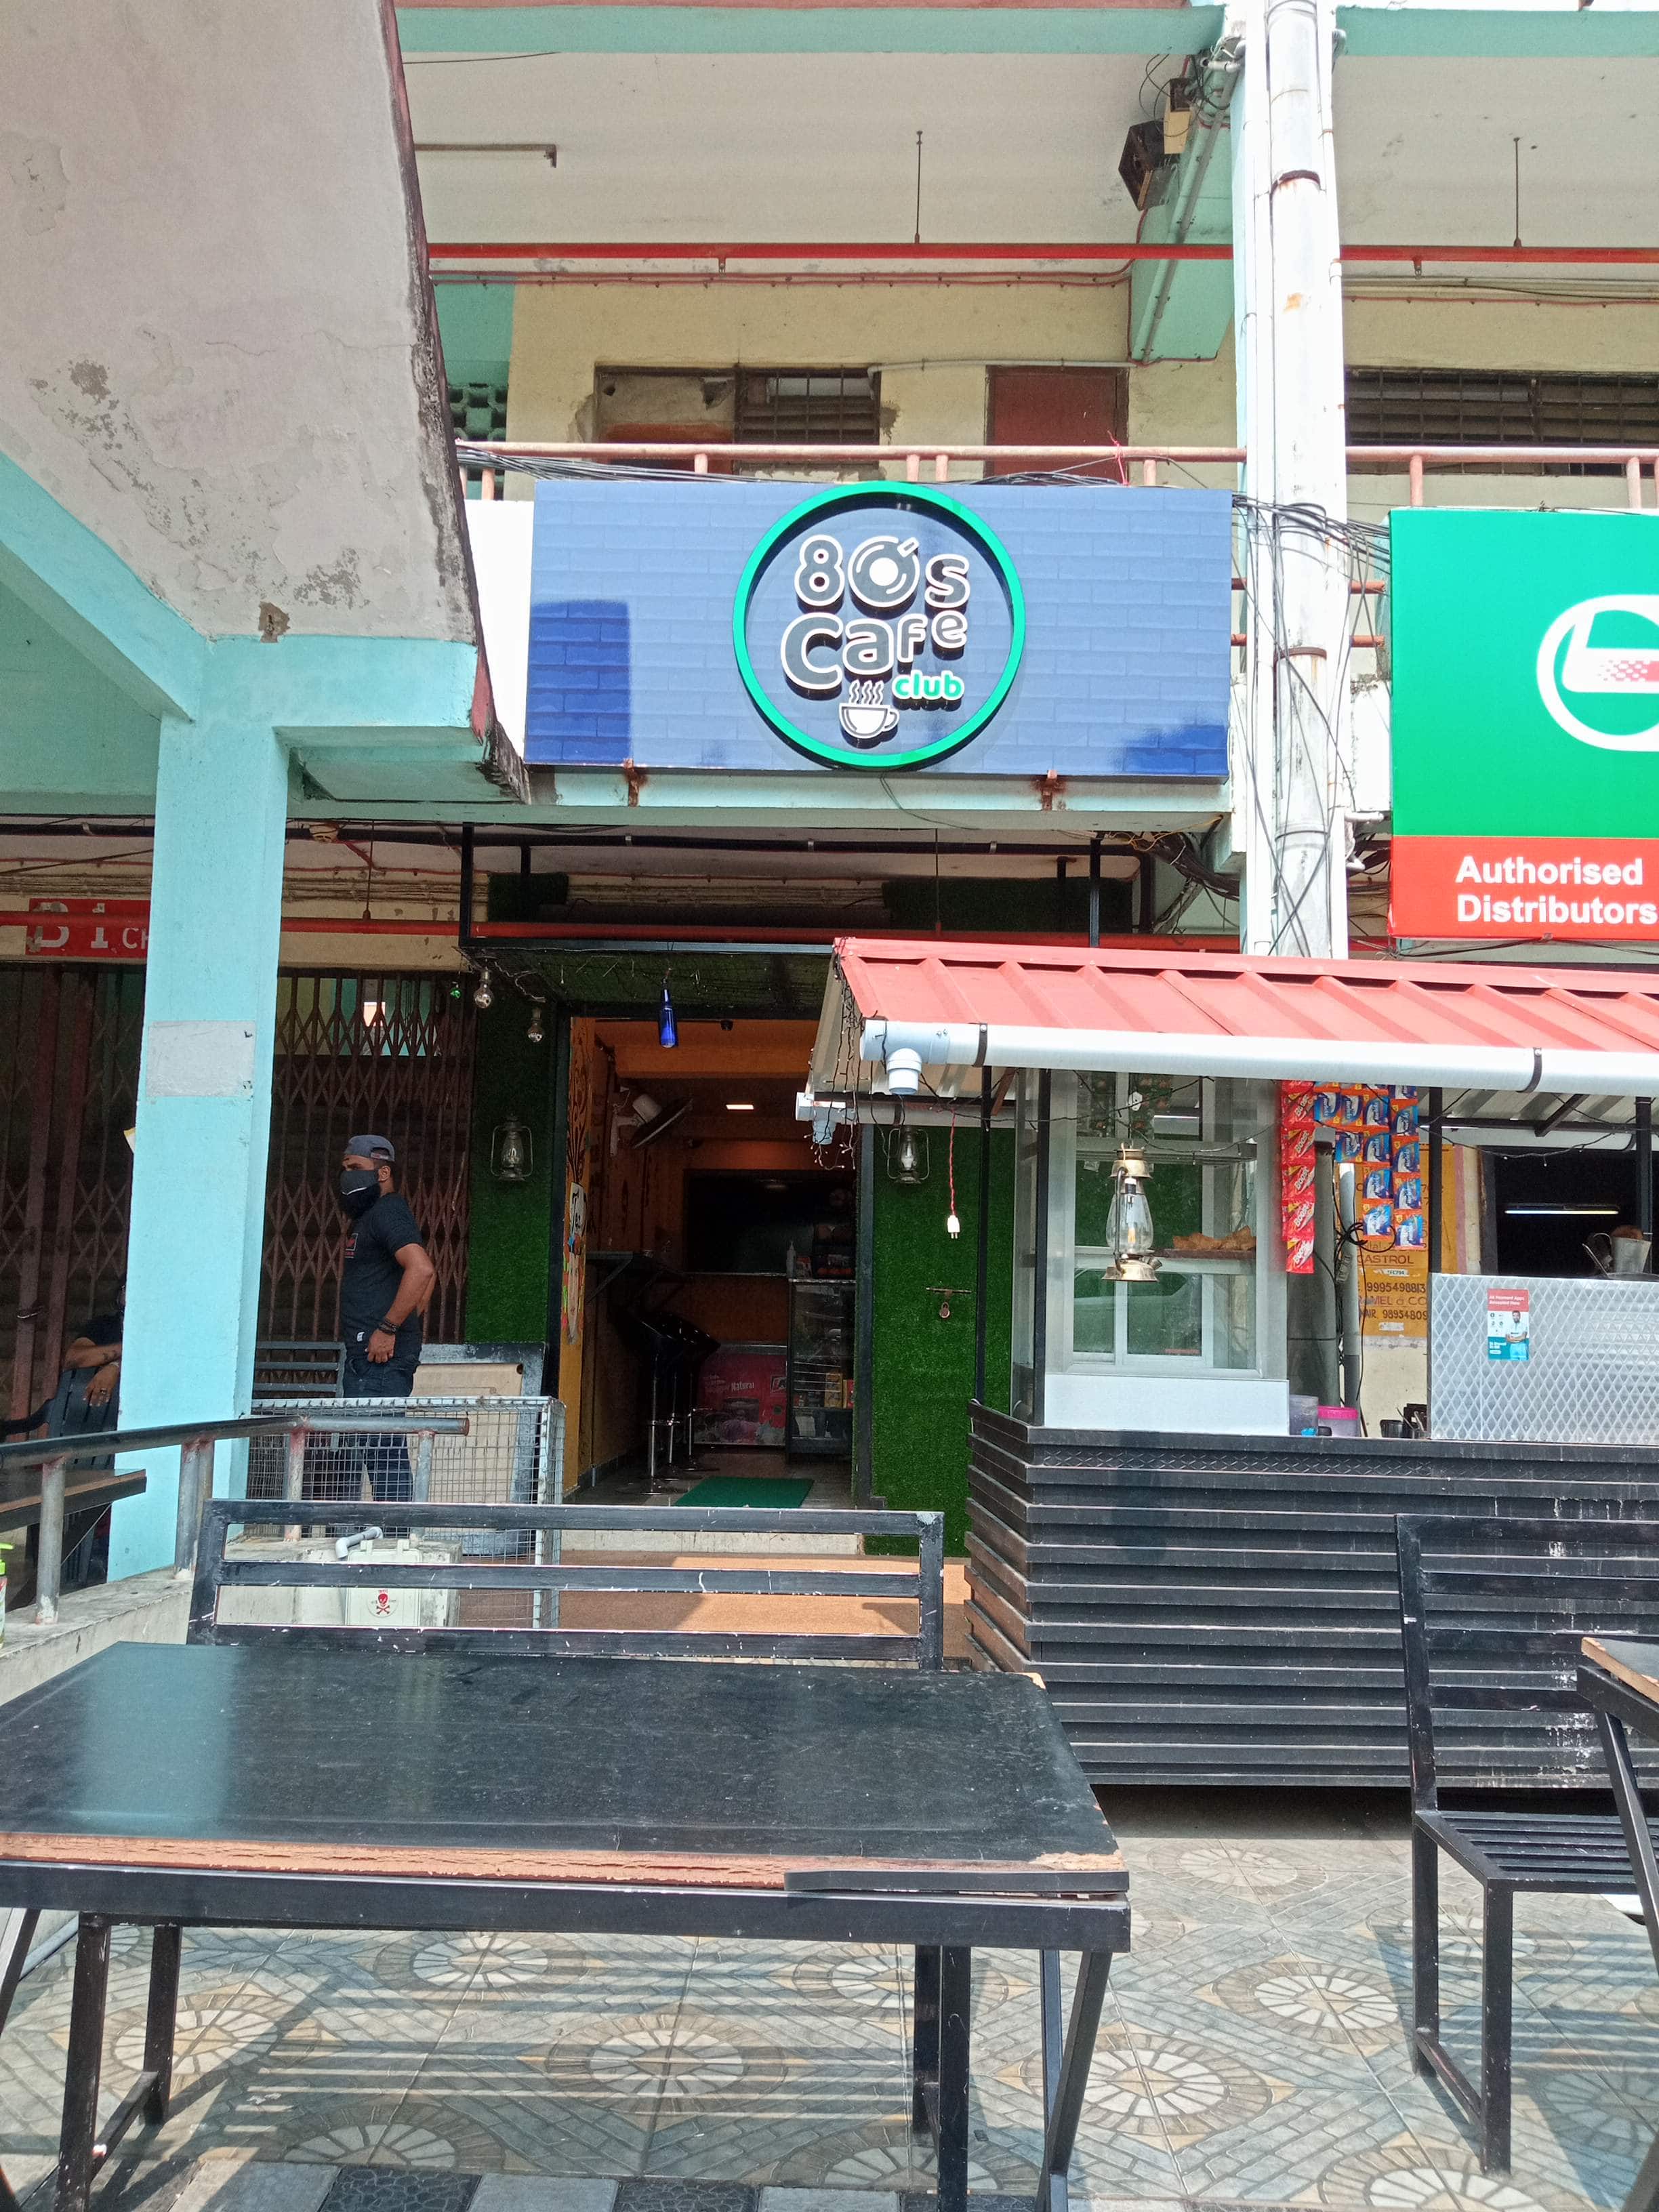 80s Cafe, Kaloor, Kochi | Zomato